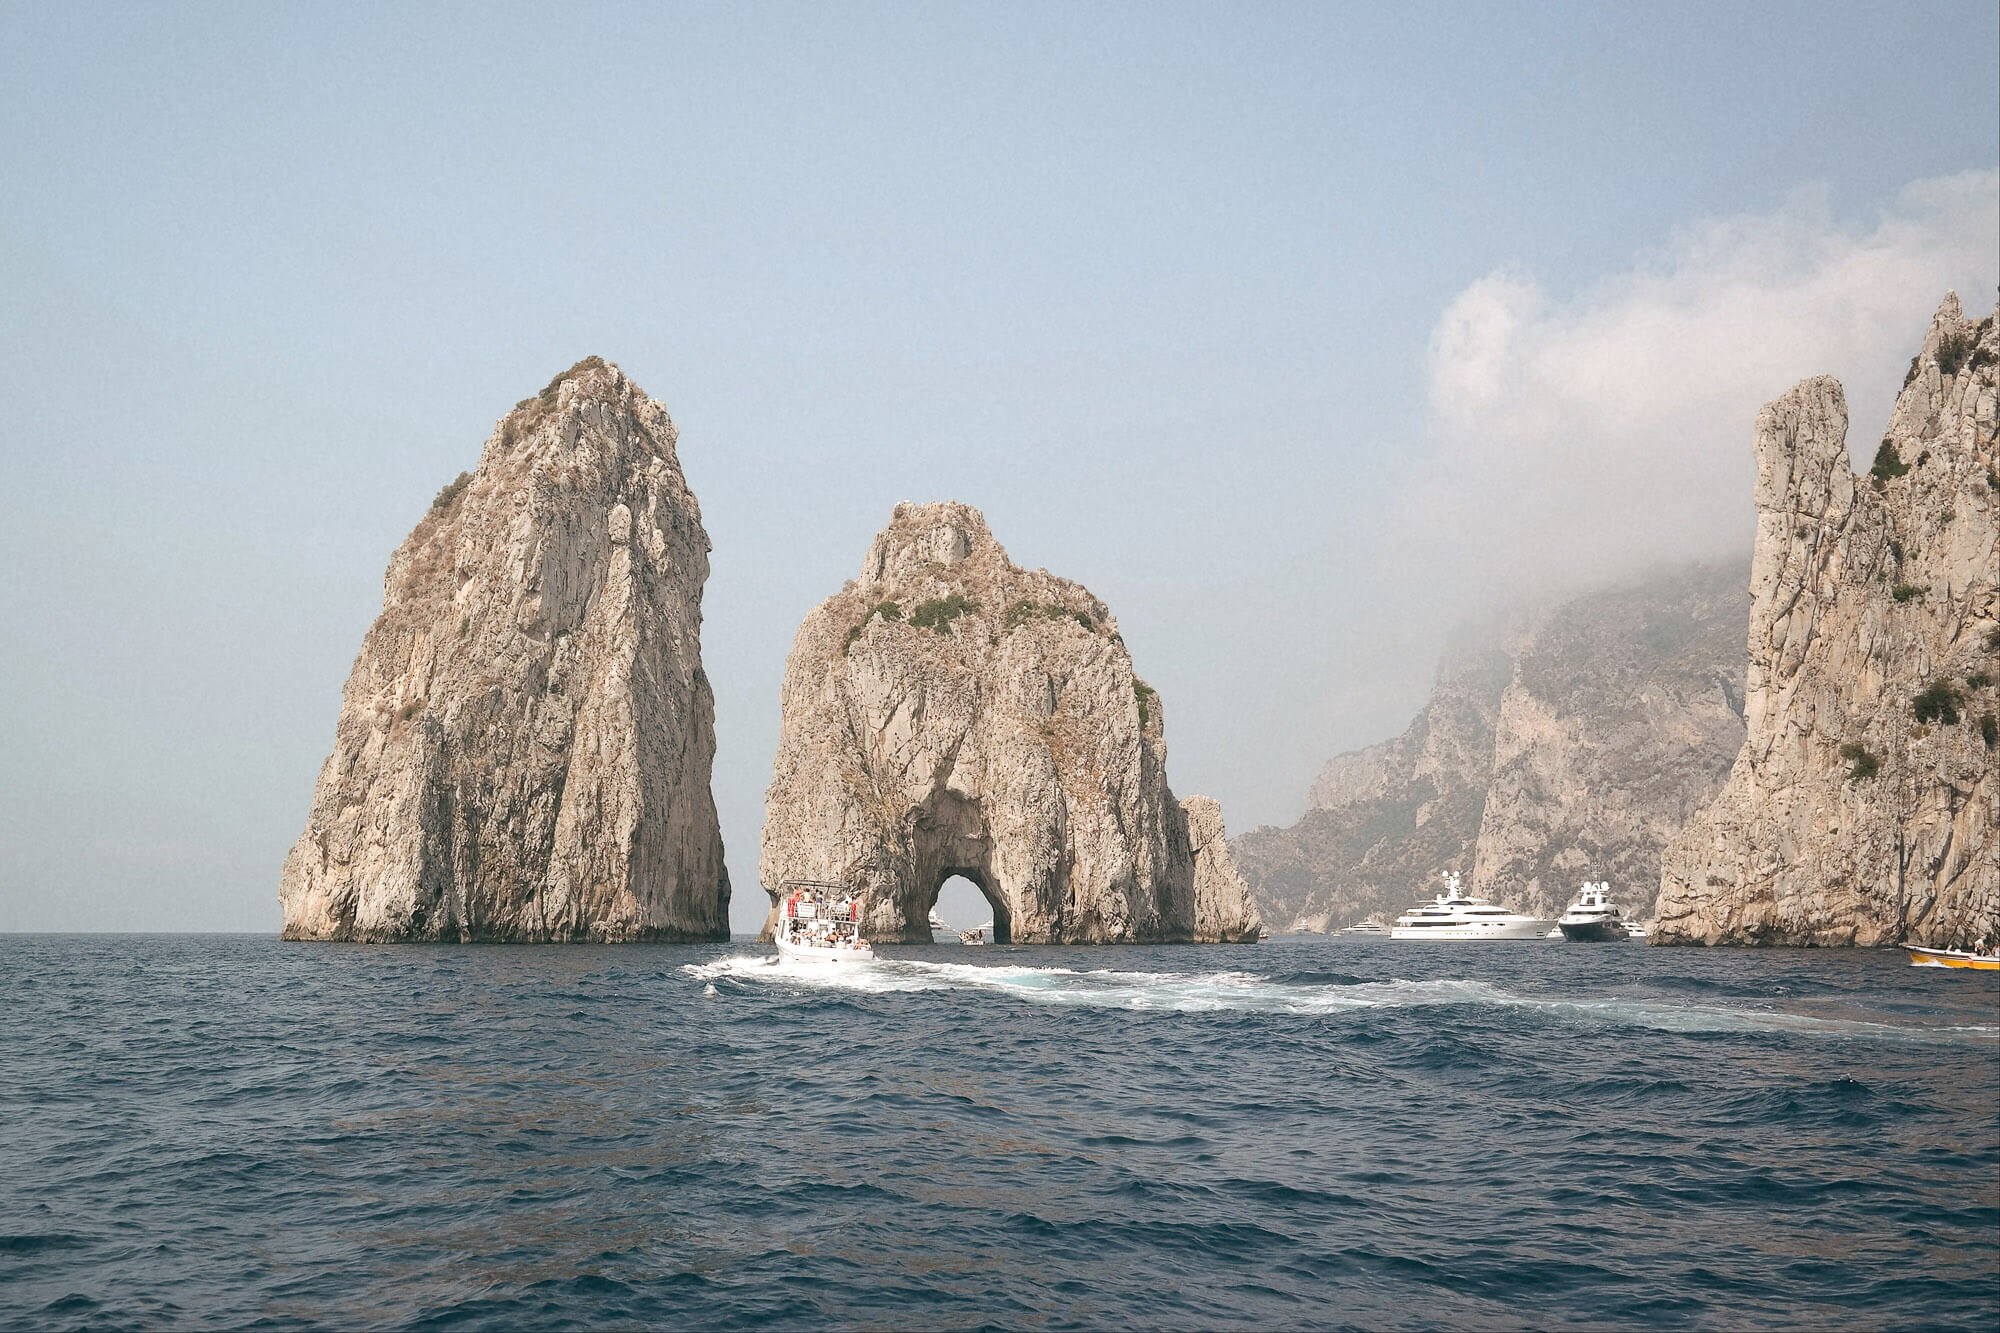 While in Positano, take a boat ride to La Fontelina, Capri